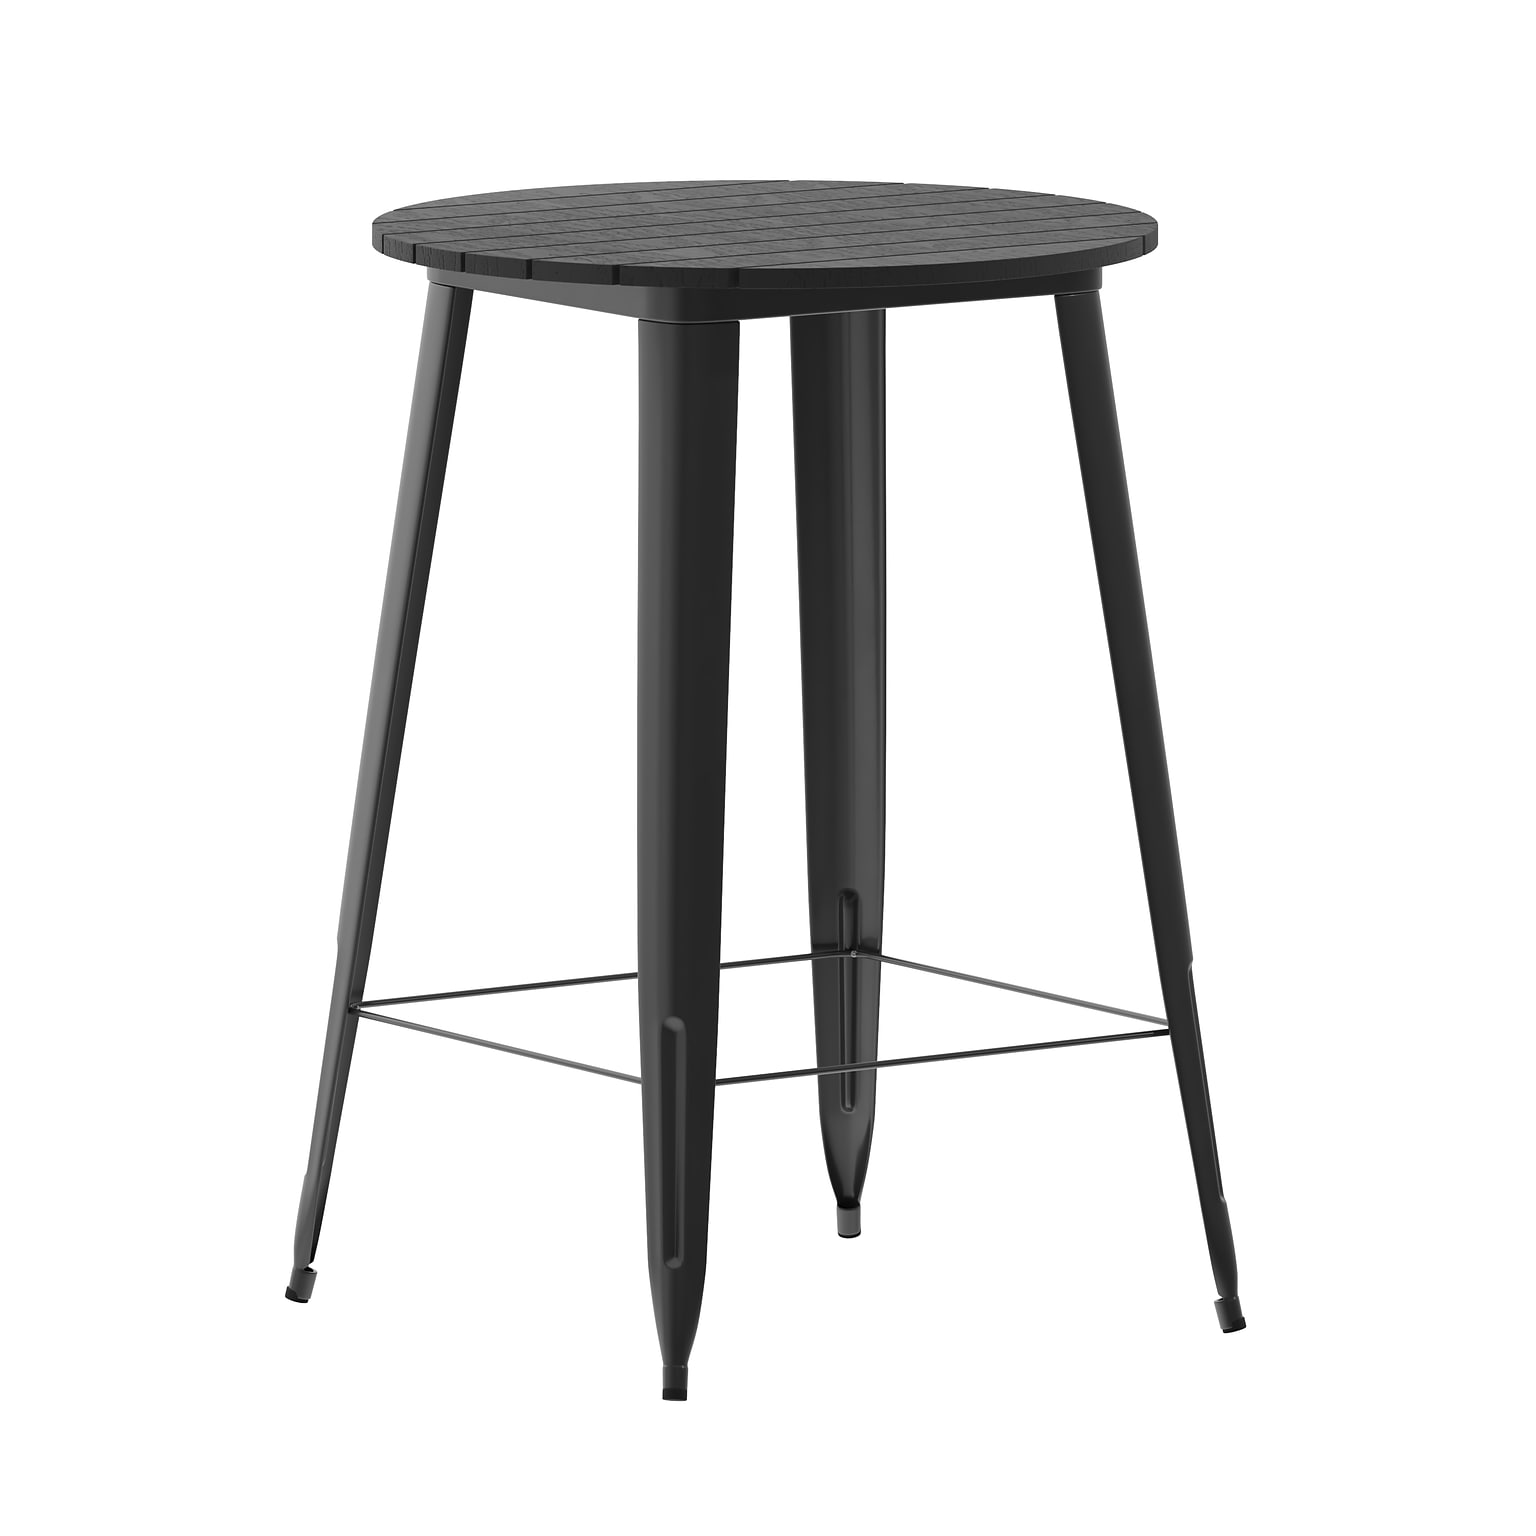 Flash Furniture Declan Indoor/Outdoor Bar Top Table, 42, Black Top with Black Base (JJT14623H76BKBK)